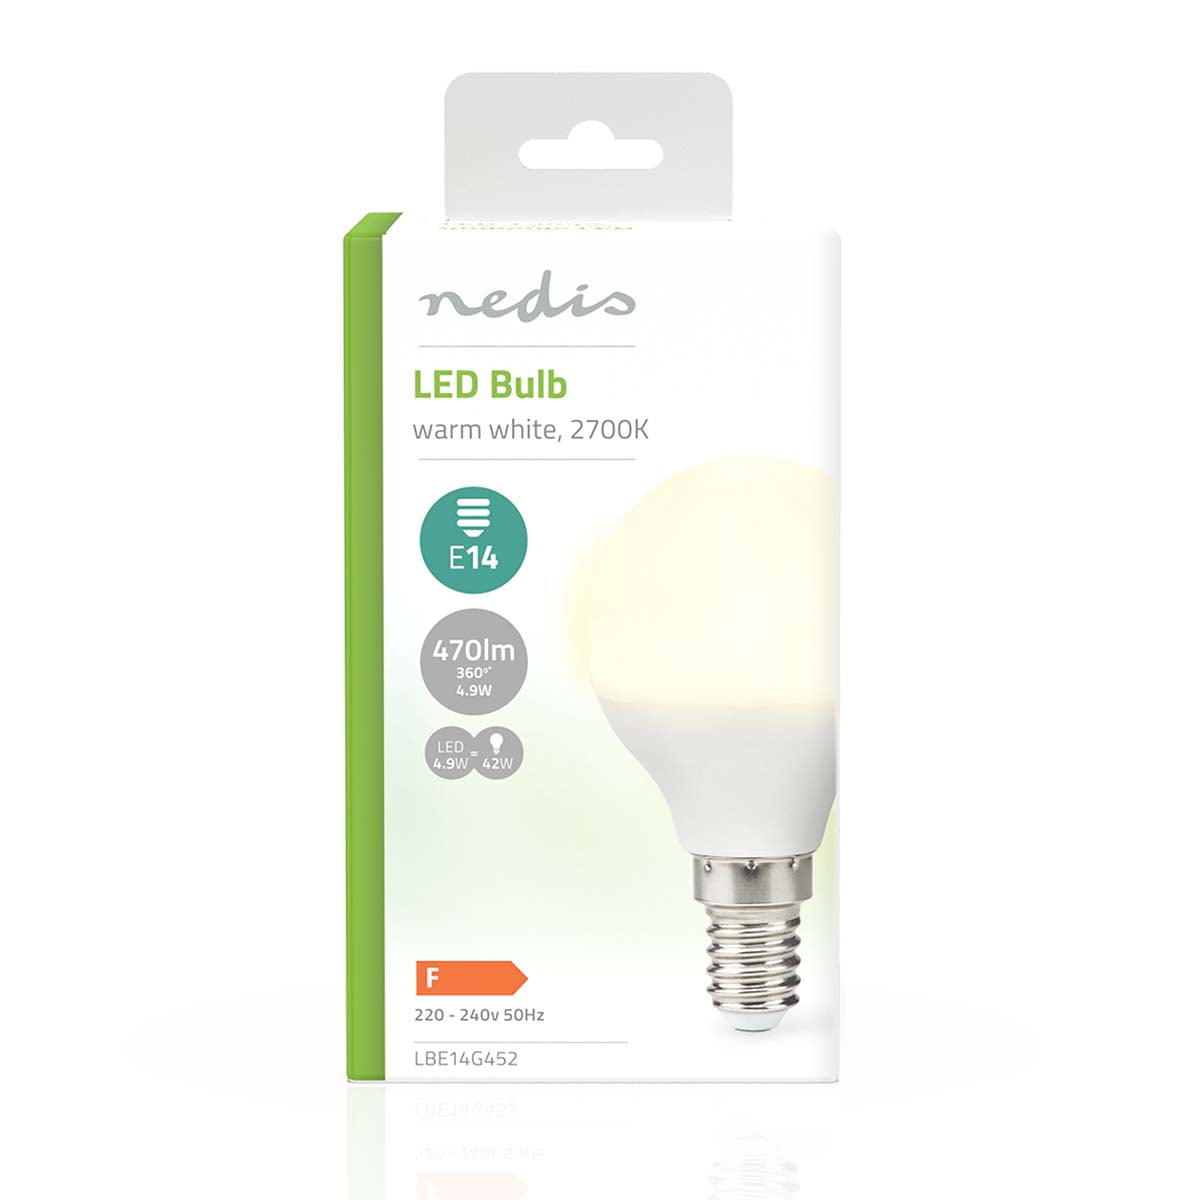 LED-Lampe E14 | G45 | 4.9 W | 470 lm | 2700 K | Warmweiss | Matte lampe | 1 Stück